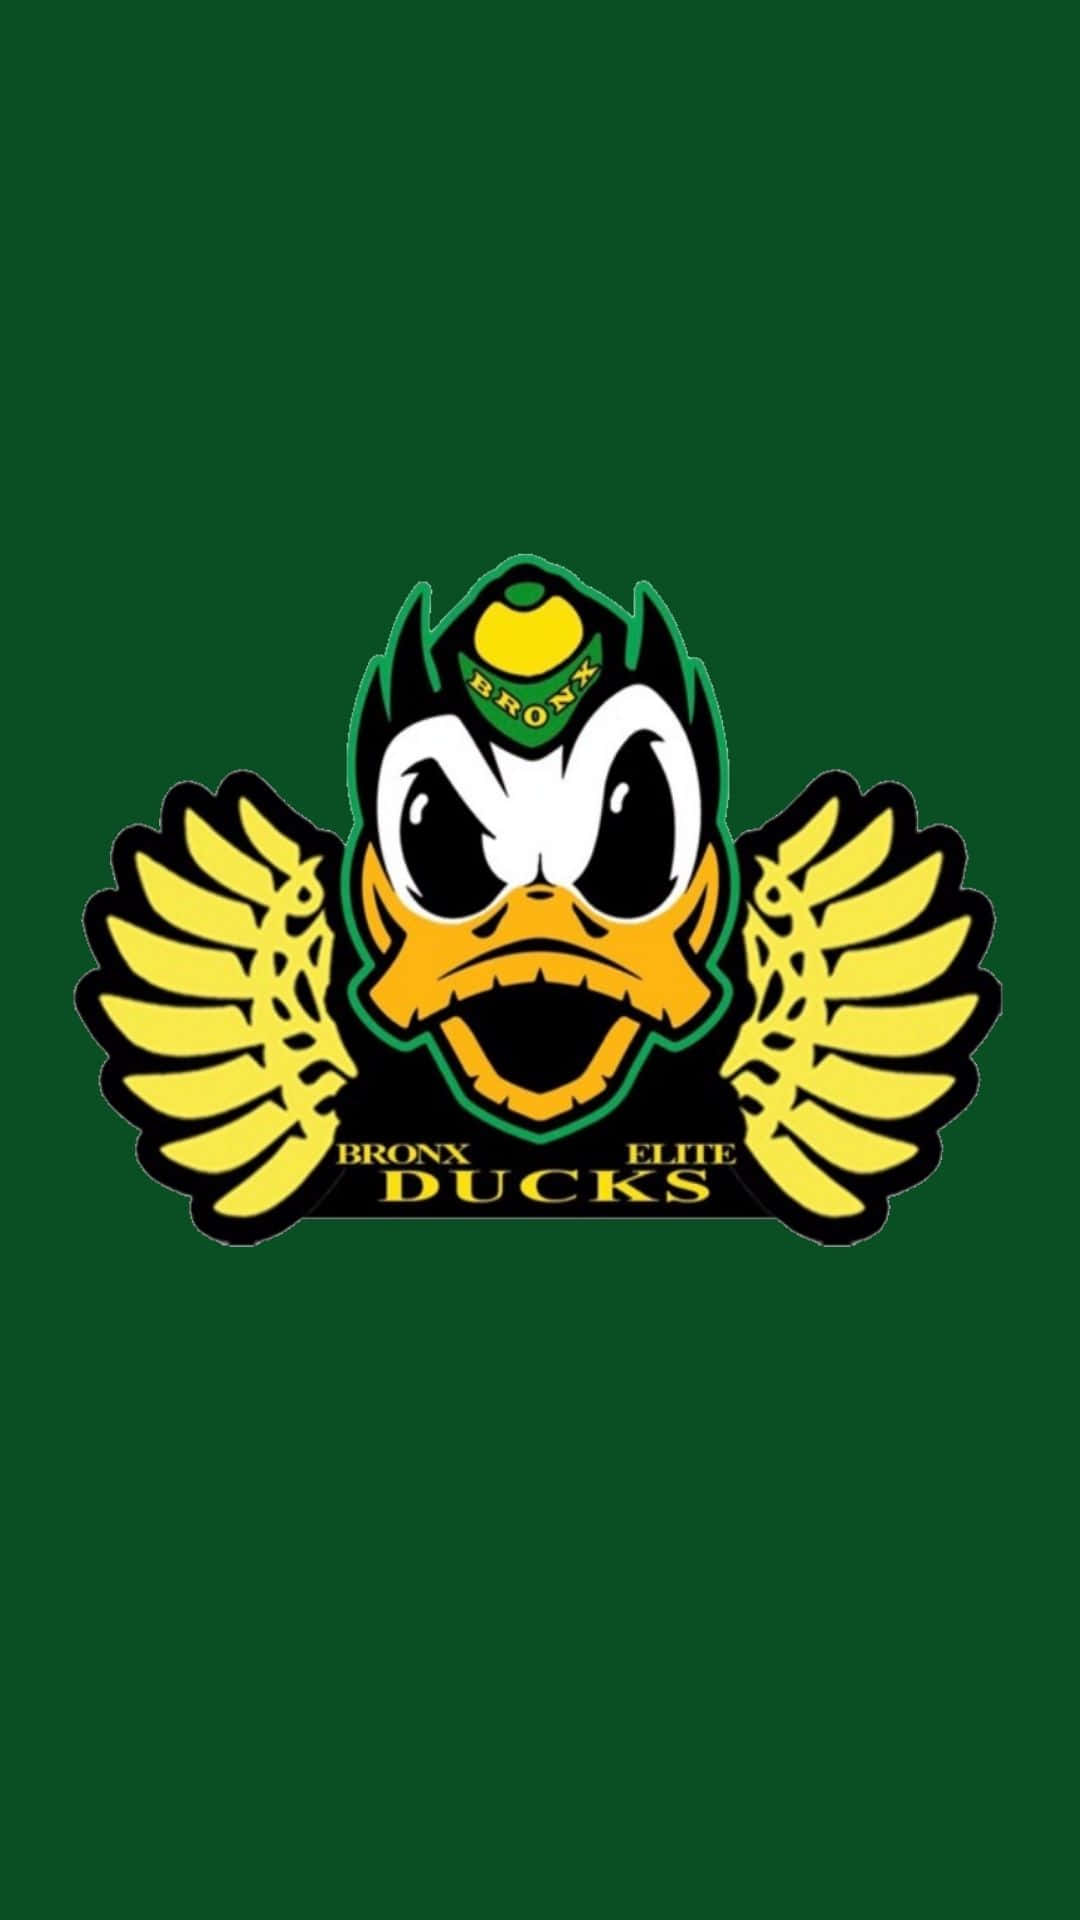 Oregon Ducks Football Team in Action Wallpaper